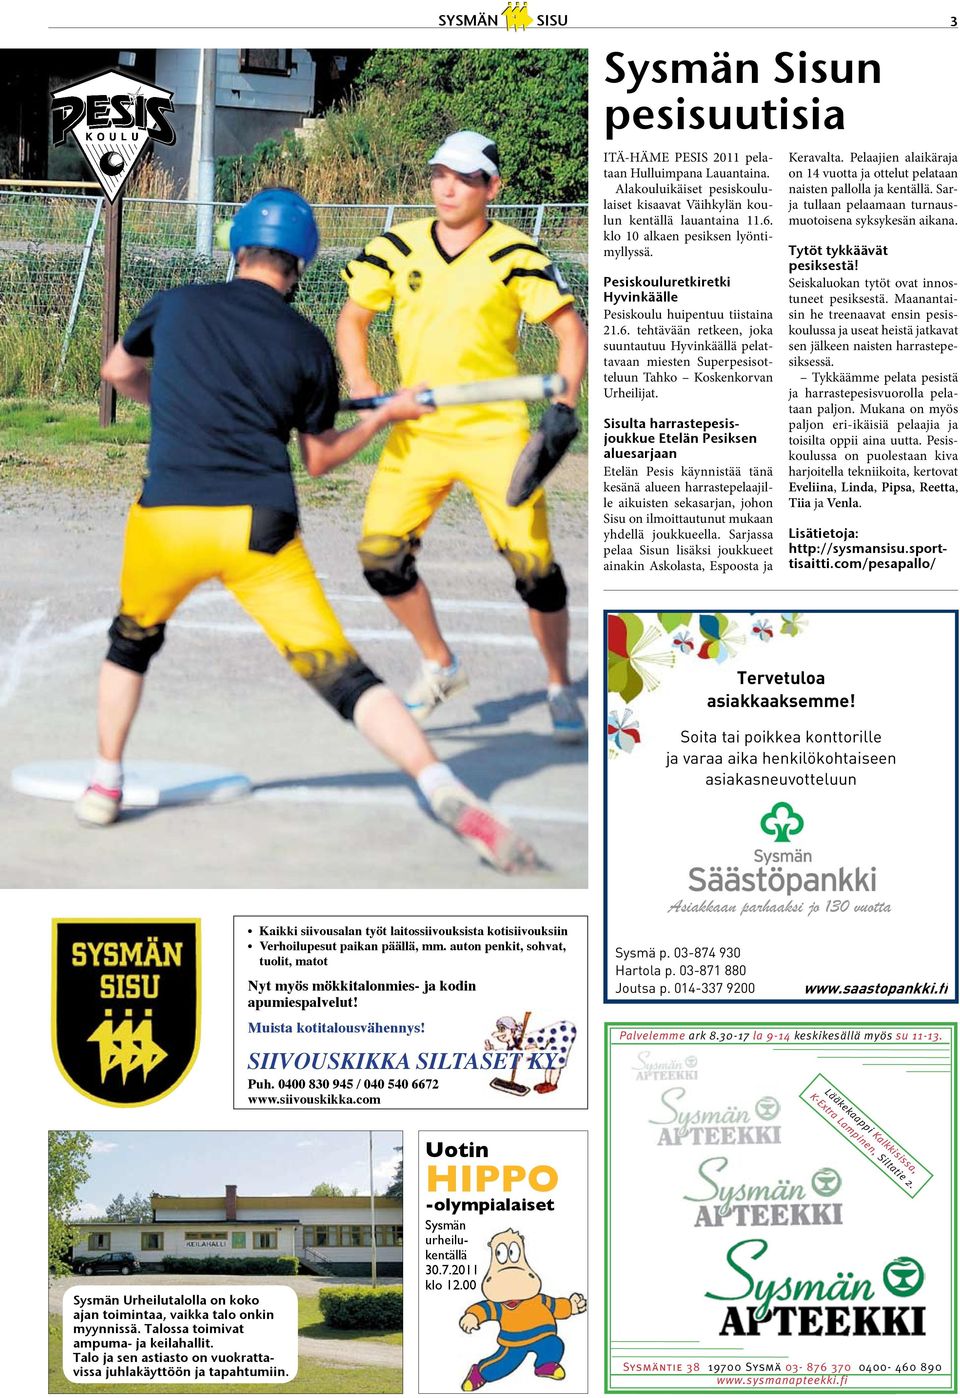 tehtävään retkeen, joka suuntautuu Hyvinkäällä pelattavaan miesten Superpesisotteluun Tahko Koskenkorvan Urheilijat.